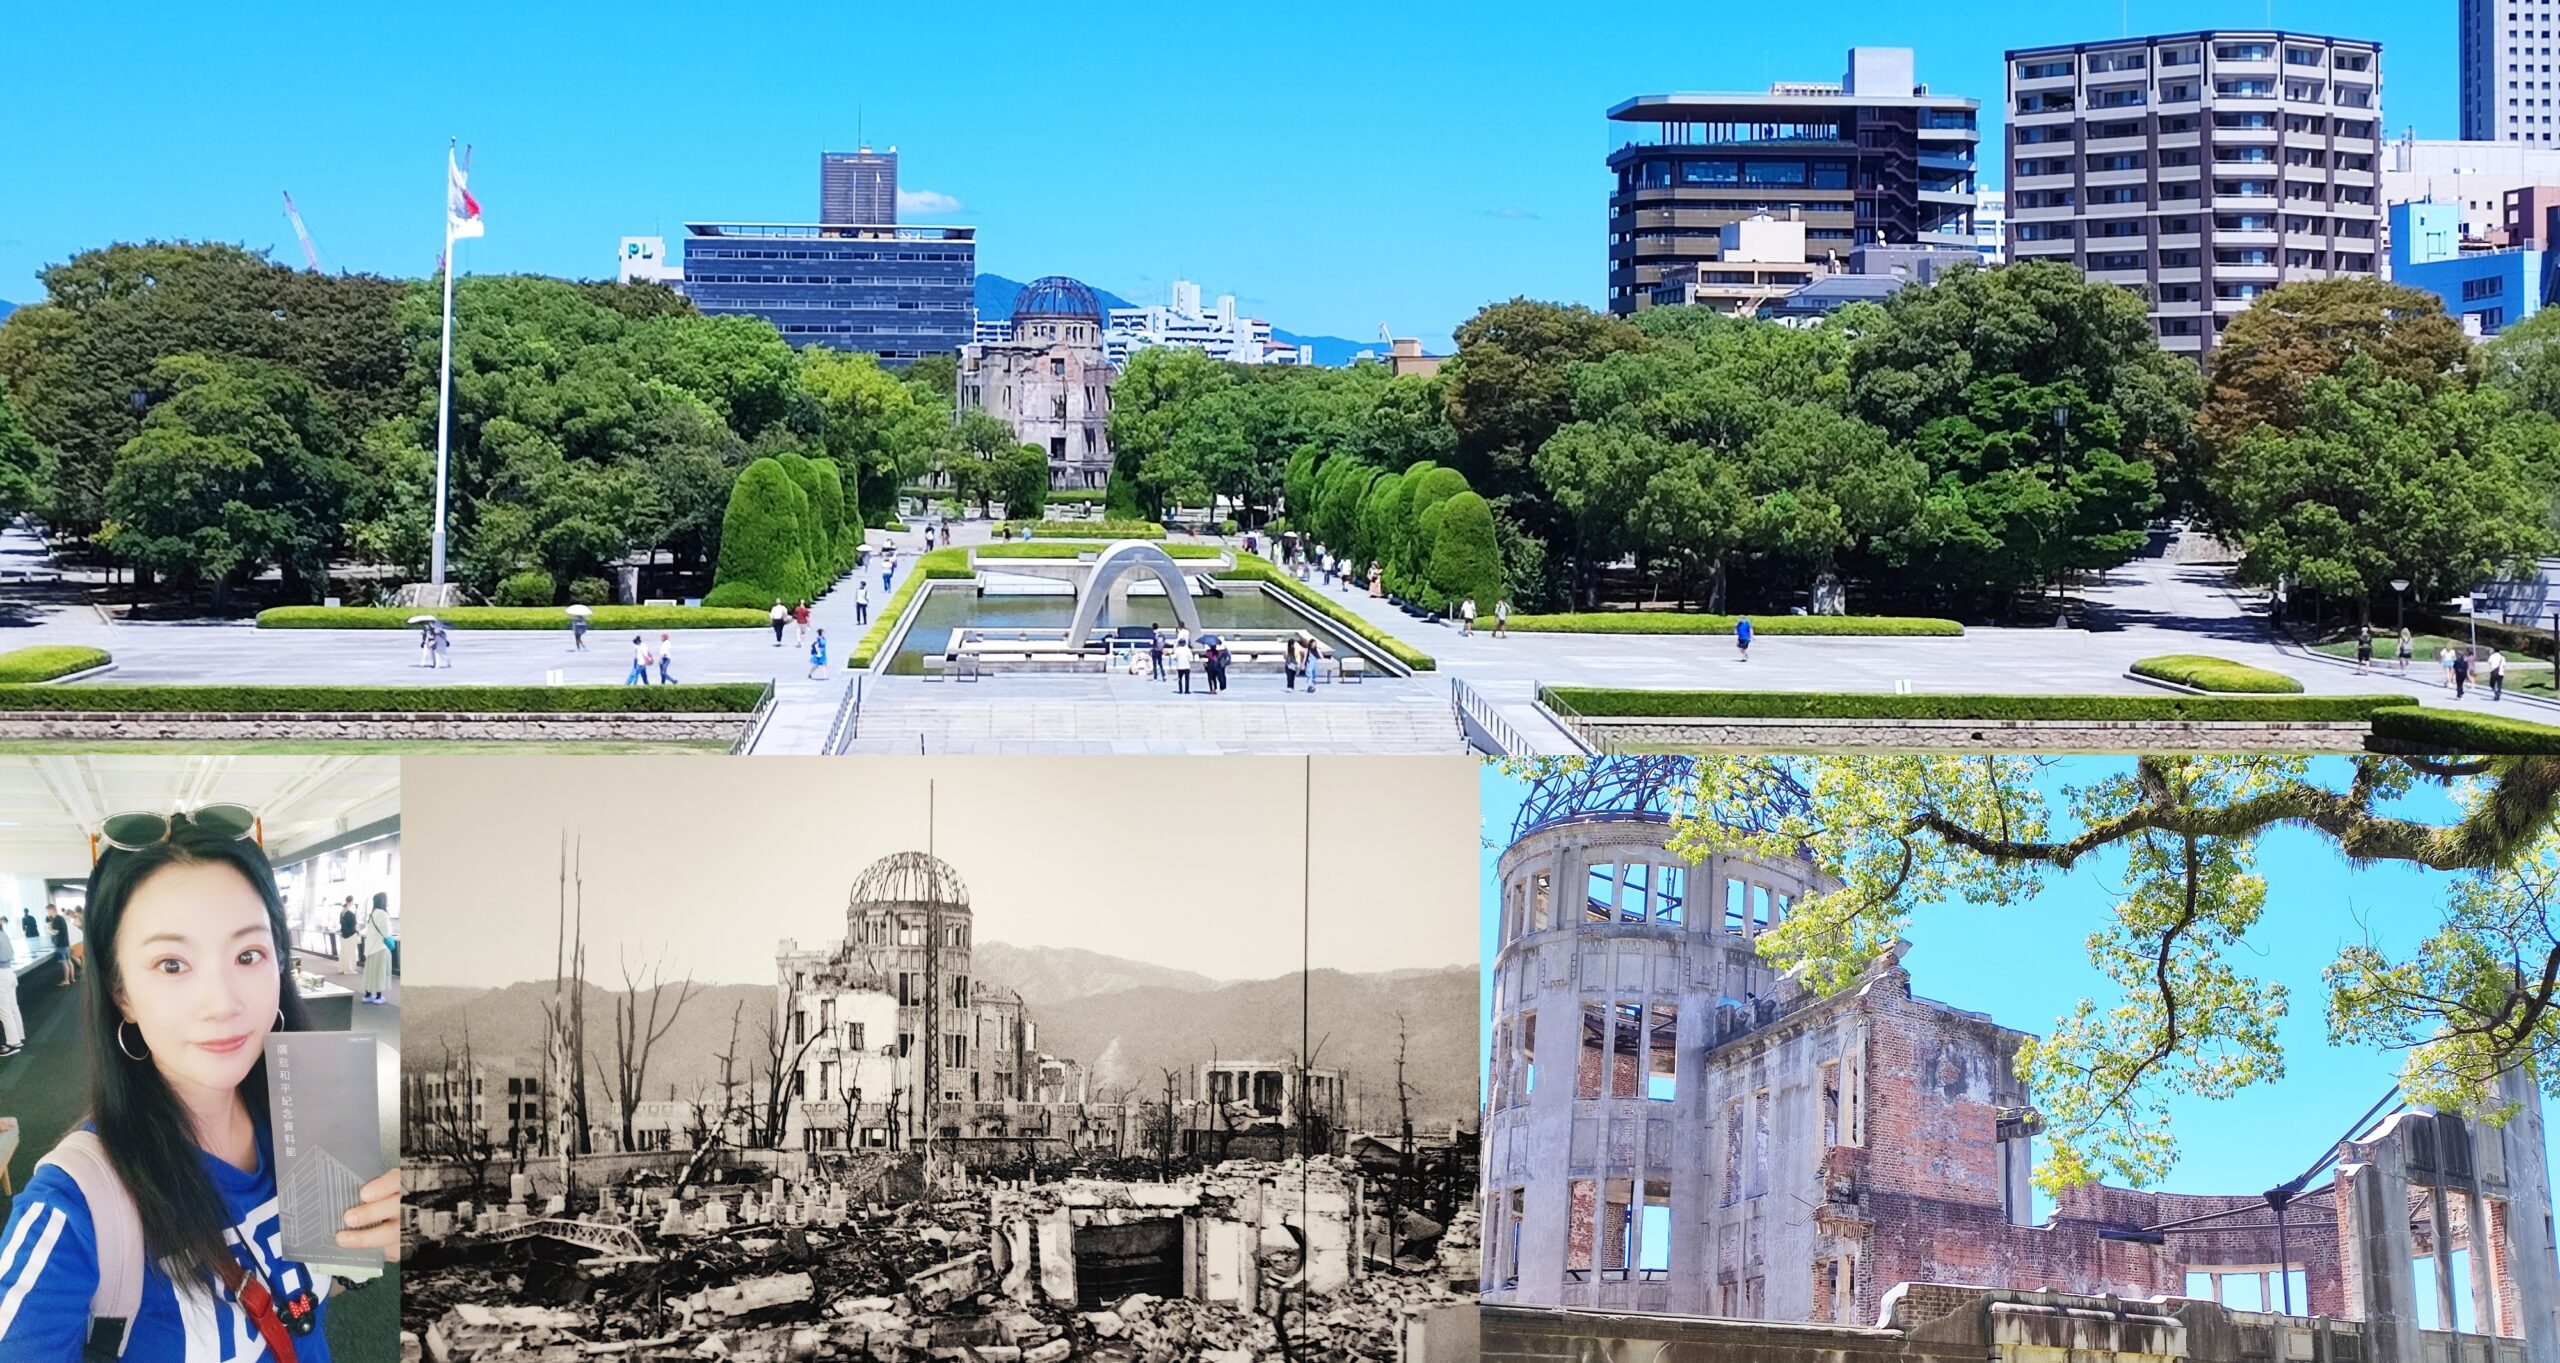 Hiroshima Peace Memorial Museum,原爆圓頂館,廣島Hiroshima,廣島和平紀念資料館,廣島平和紀念公園,日本中國地方,日本旅遊,日本自由行,相生橋